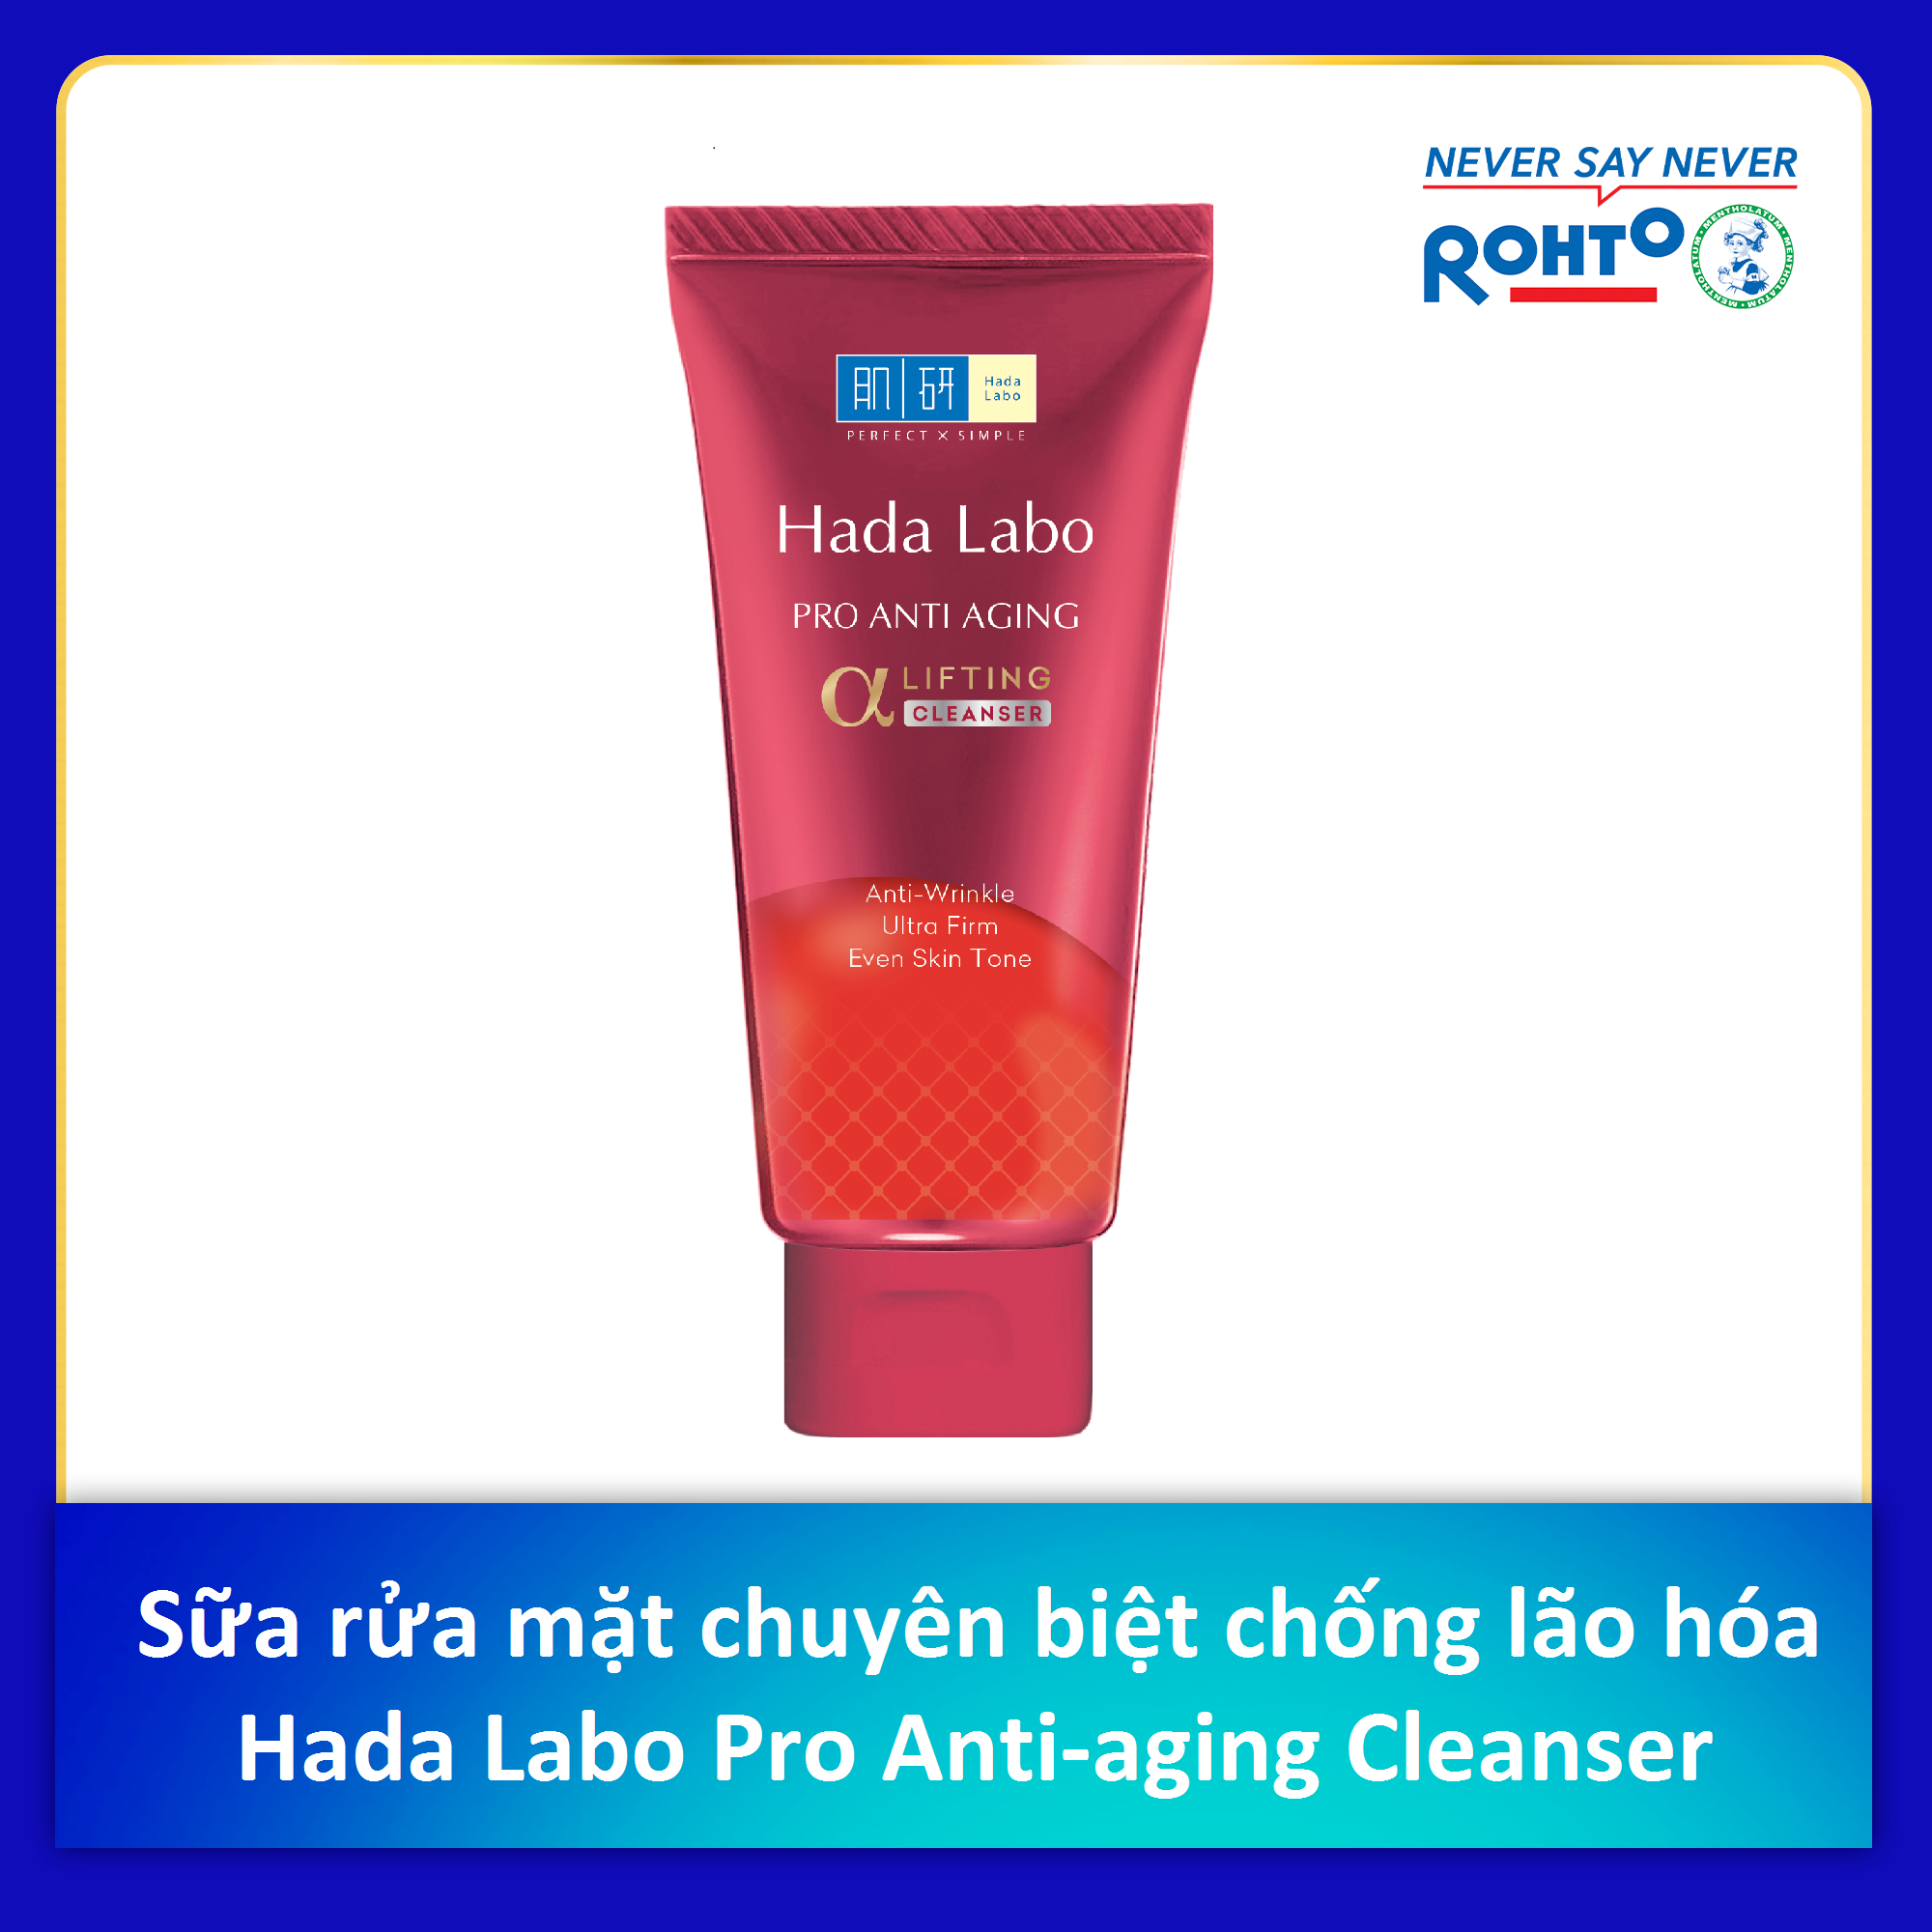 [HCM]Sữa rửa mặt dưỡng chuyên biệt chống lão hóa Hada Labo Pro Anti Aging α Lifting Cleanser (80g)